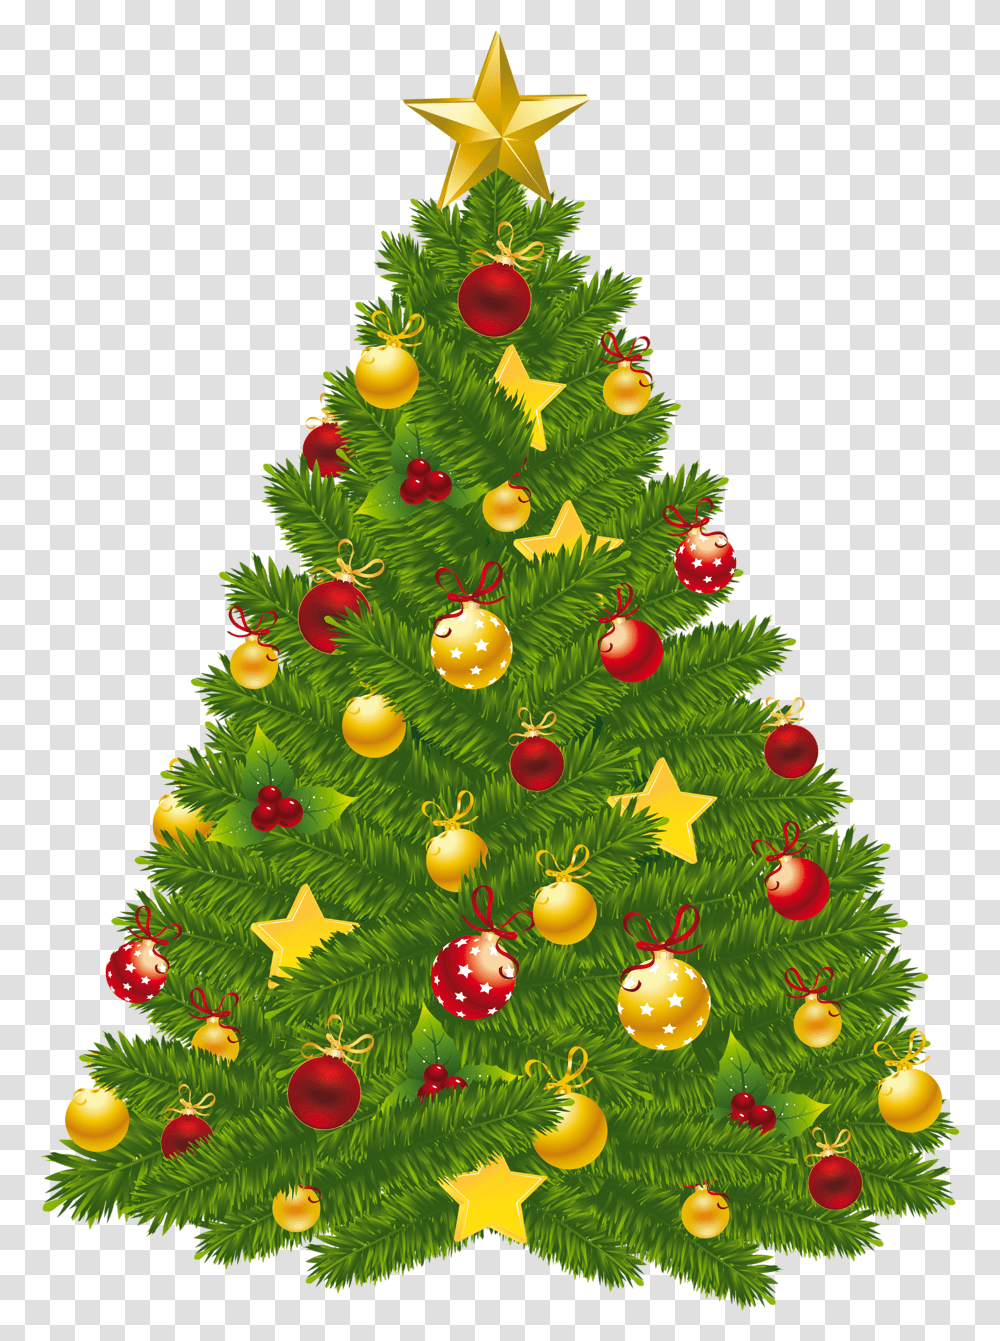 Xmas Christmas Tree Christmas Tree Free, Ornament, Plant, Vegetation, Bush Transparent Png